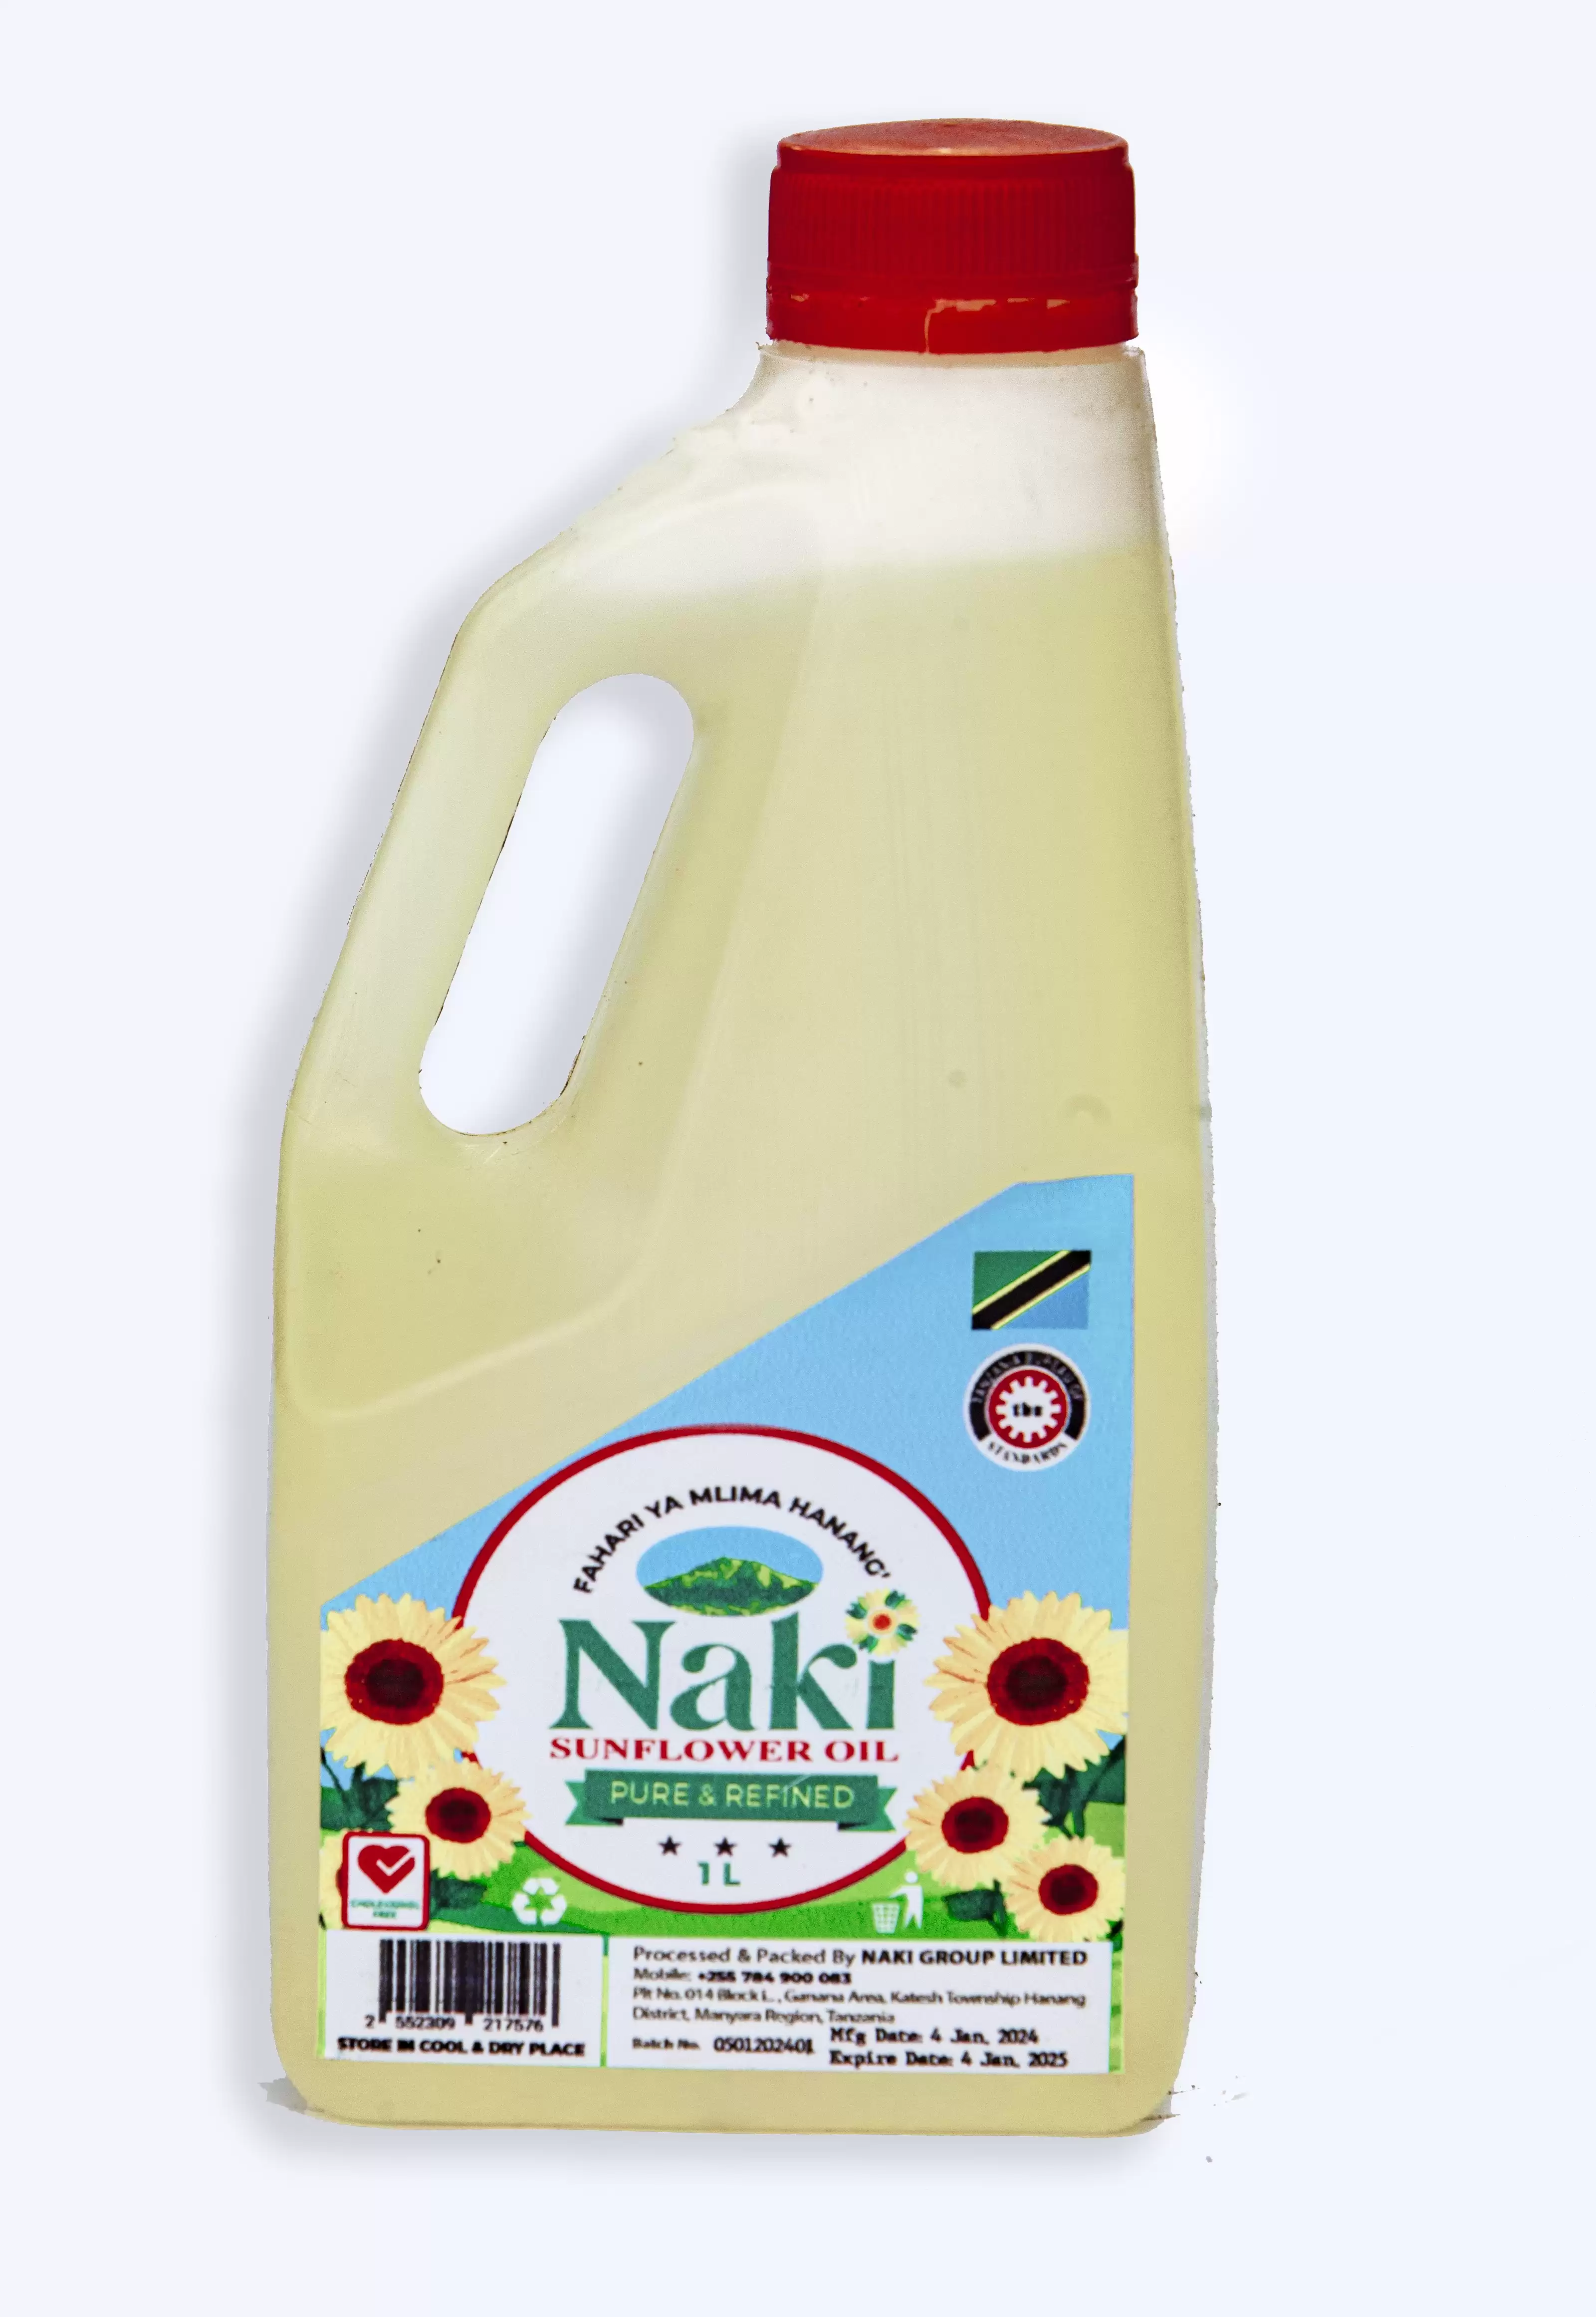 Naki sunflower Oil 1L